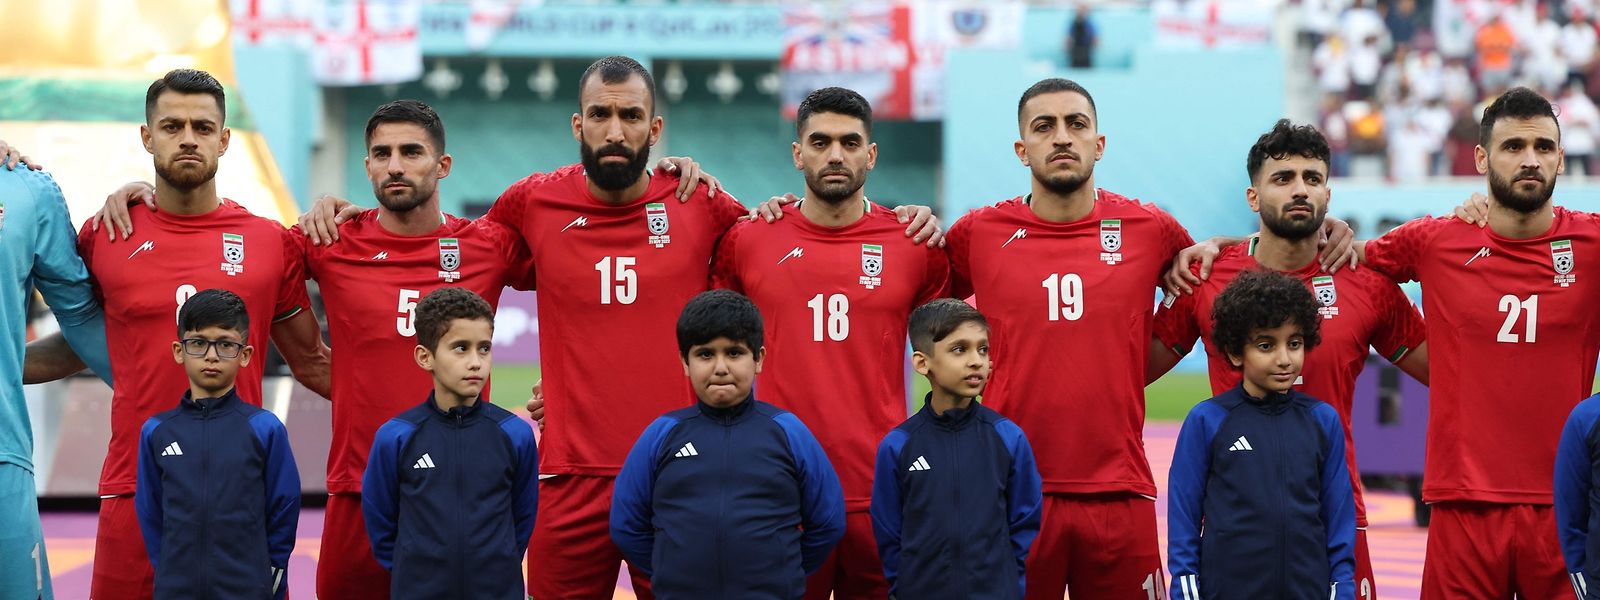 Stiller Protest: Die gesamte iranische Nationalmannschaft hatte am Montag vor dem 2:6 im WM-Auftaktspiel gegen England die Nationalhymne nicht mitgesungen. In den sozialen Medien wurde diese Geste als Solidarität mit den seit über zwei Monaten anhaltenden systemkritischen Protesten im Land gewertet.